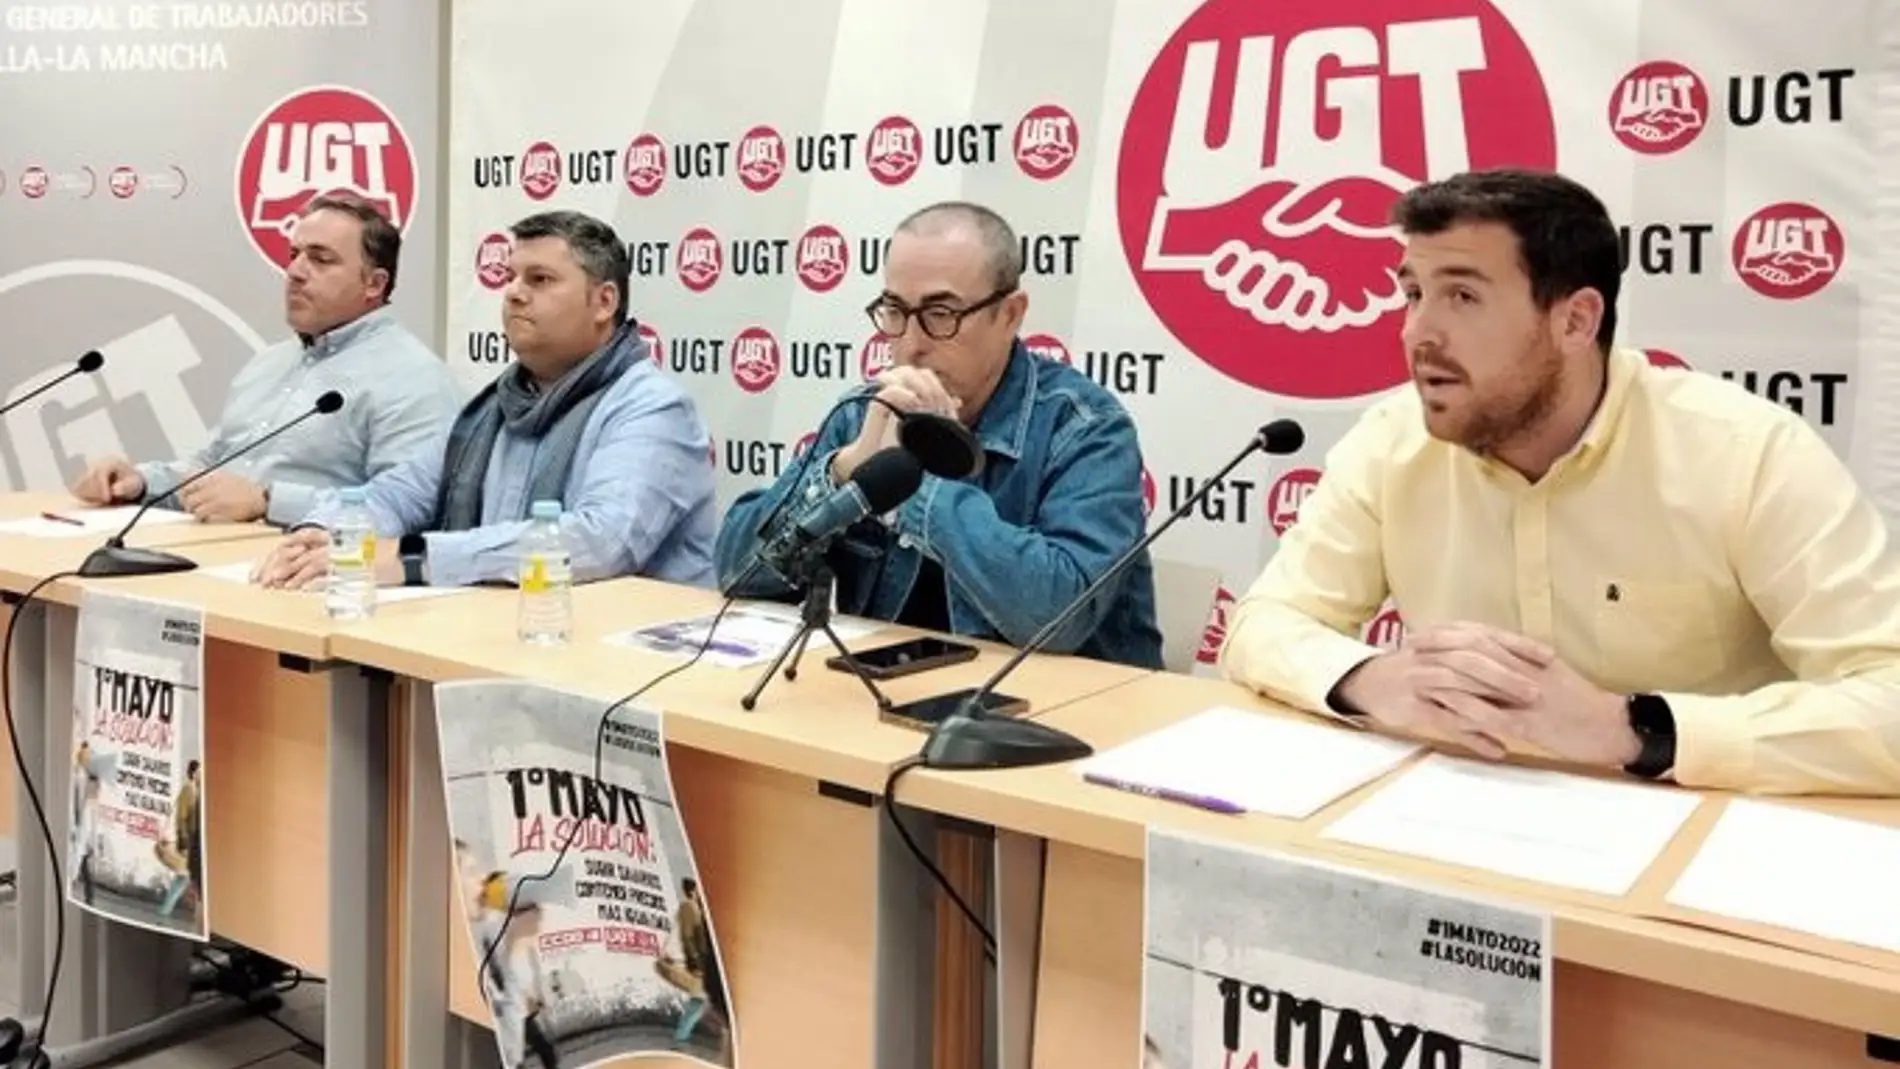 Los sindicatos se concentran este viernes en las sedes patronales de Castilla - La Mancha para reclamar una subida salarial